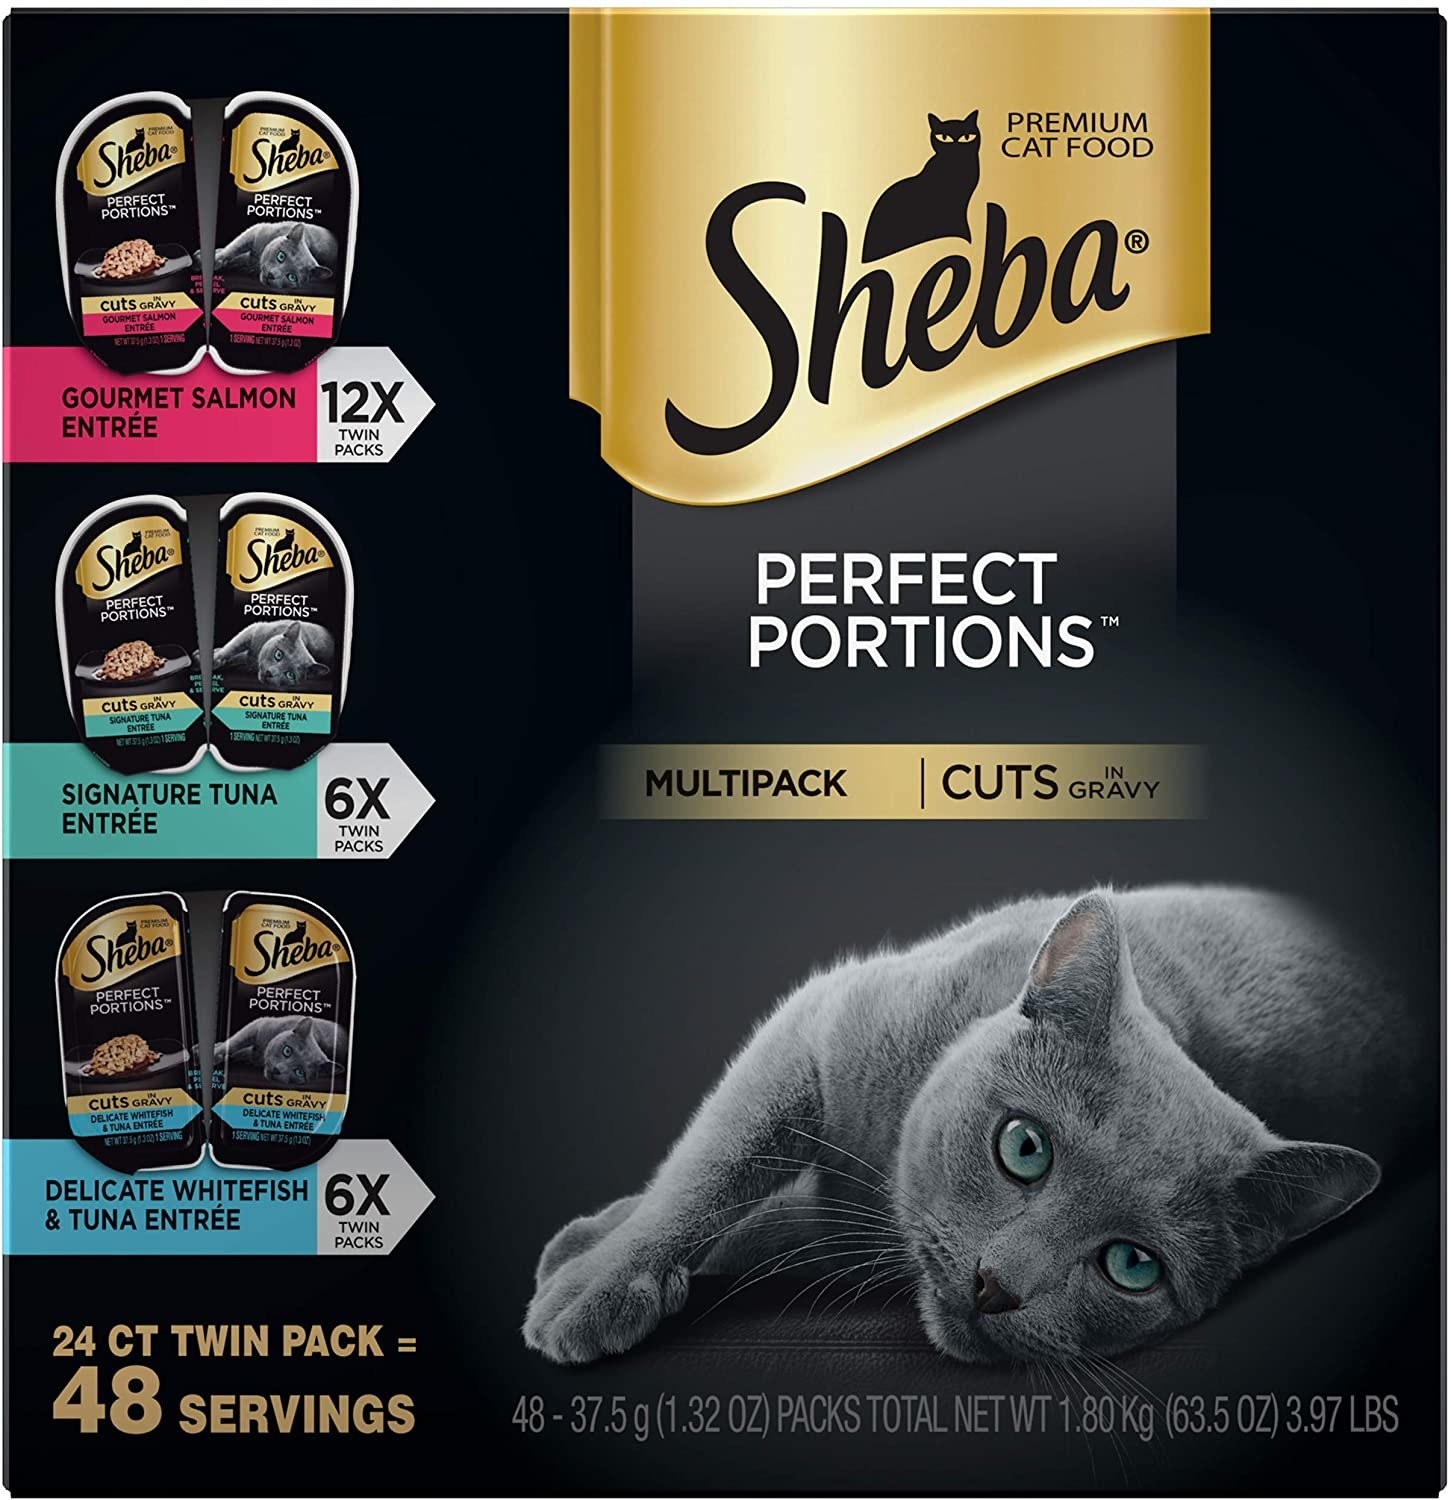 Black packaging of Sheba cat food